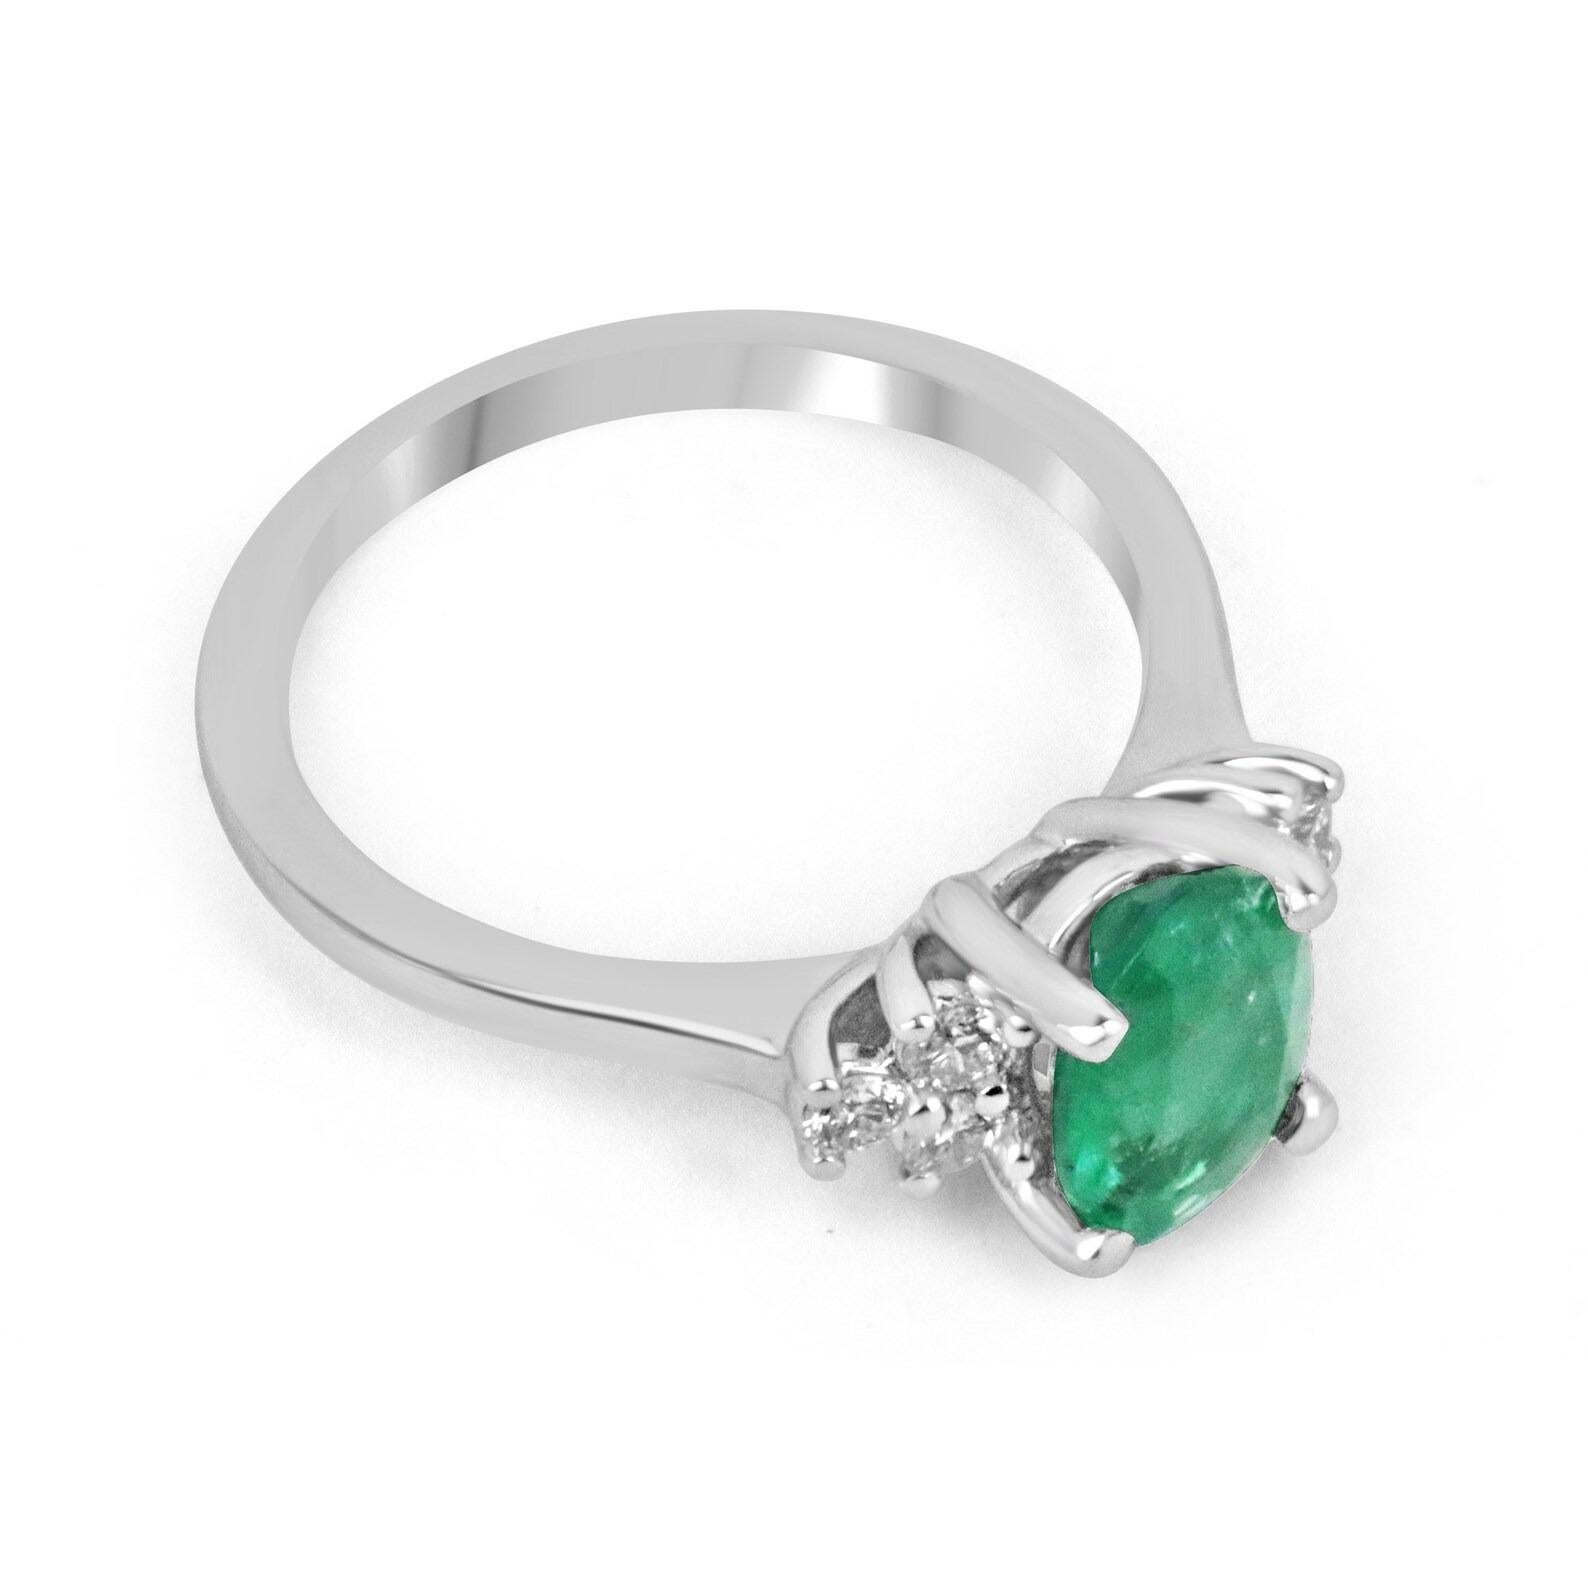 Ein atemberaubender, klassischer Verlobungsring mit ovalem Smaragd und rundem Diamanten, 14 Karat, für die rechte Hand. Der Mittelstein ist ein schöner 1,53-karätiger, natürlicher Smaragd im Ovalschliff, der einen ausgezeichneten Glanz und eine